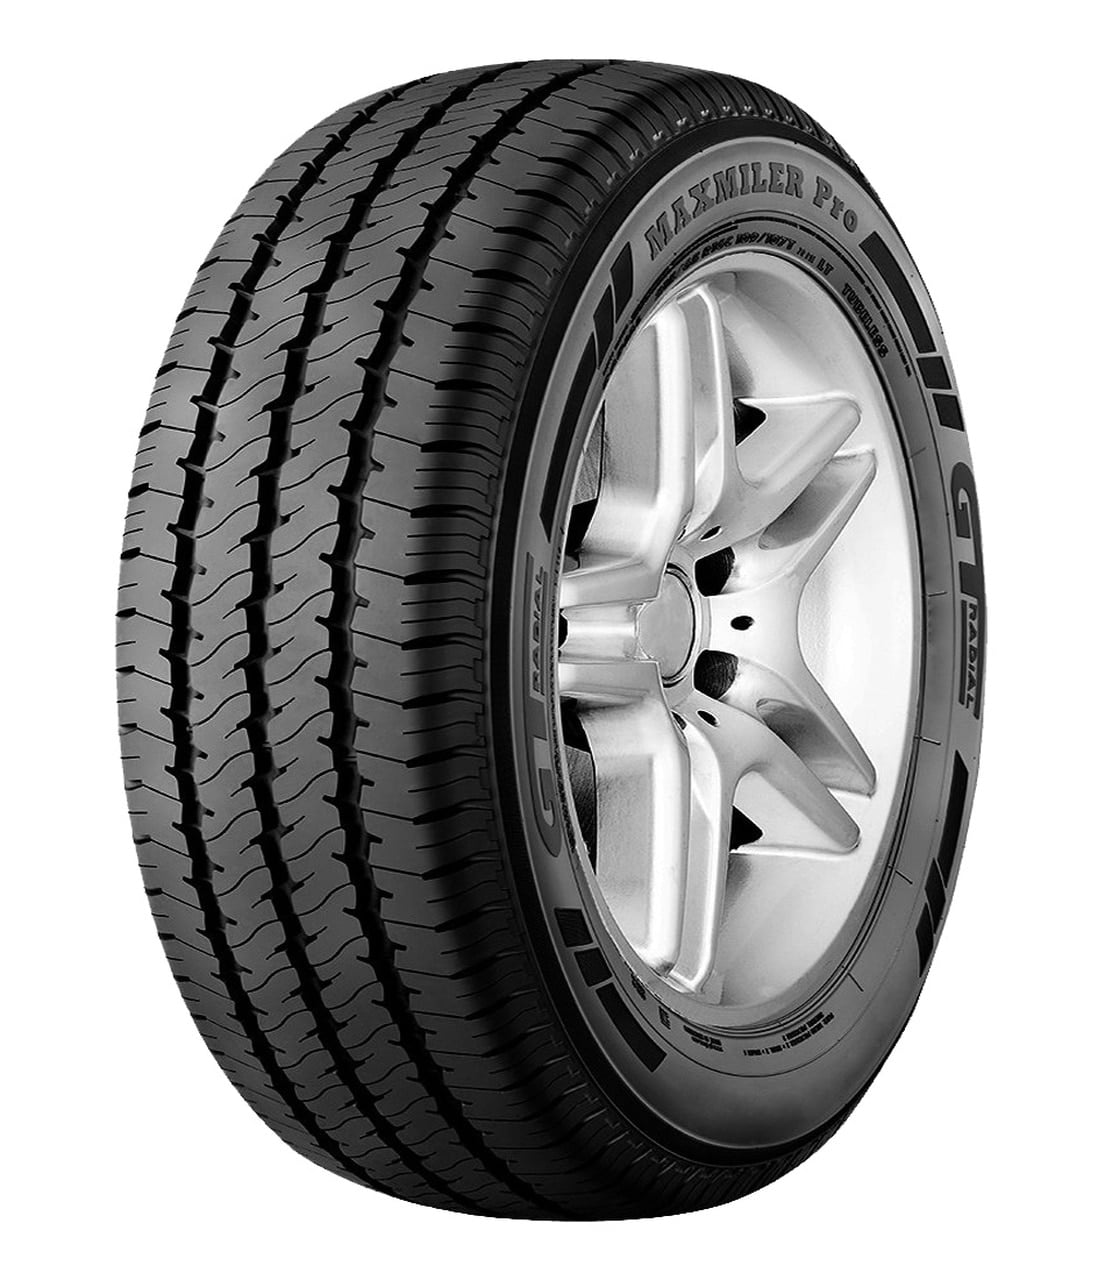 245/75-17 121/118 Maxmiler Pro R Tire GT Radial